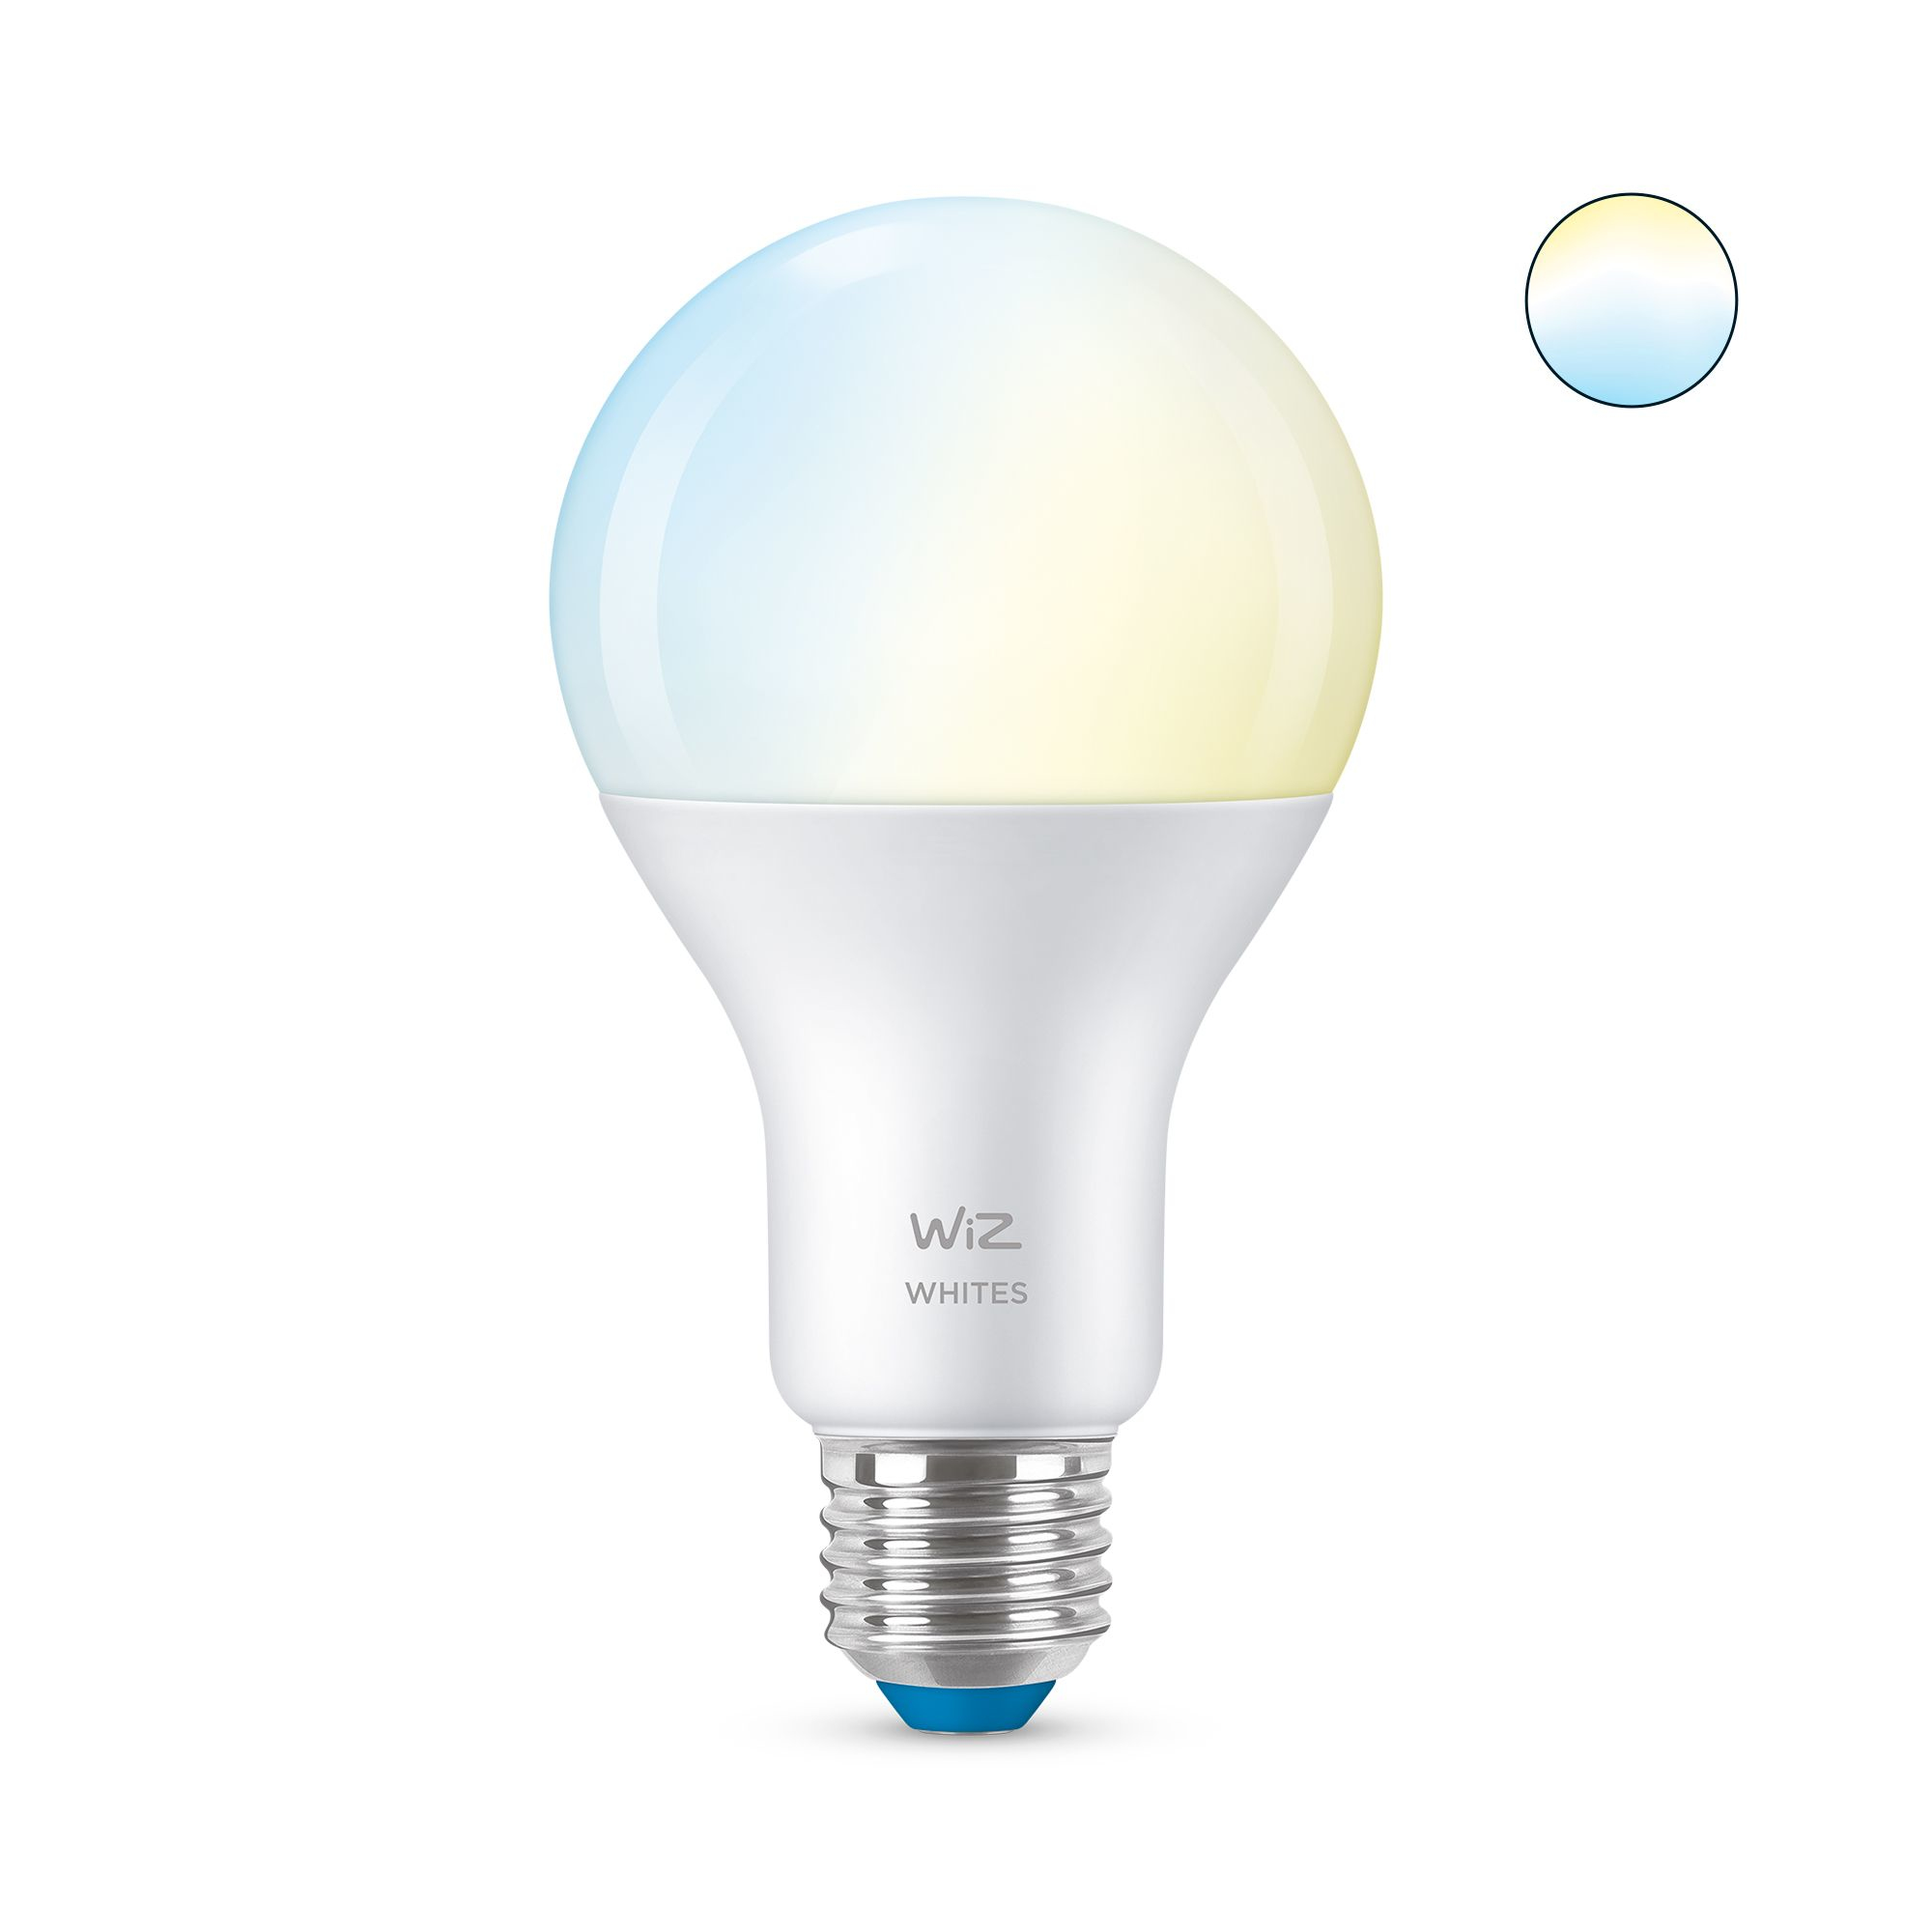 WIZCONNECTED WiZ 8718699786175 - Intelligente Glühbirne - Weiß - WLAN - LED - E27 - Weiß